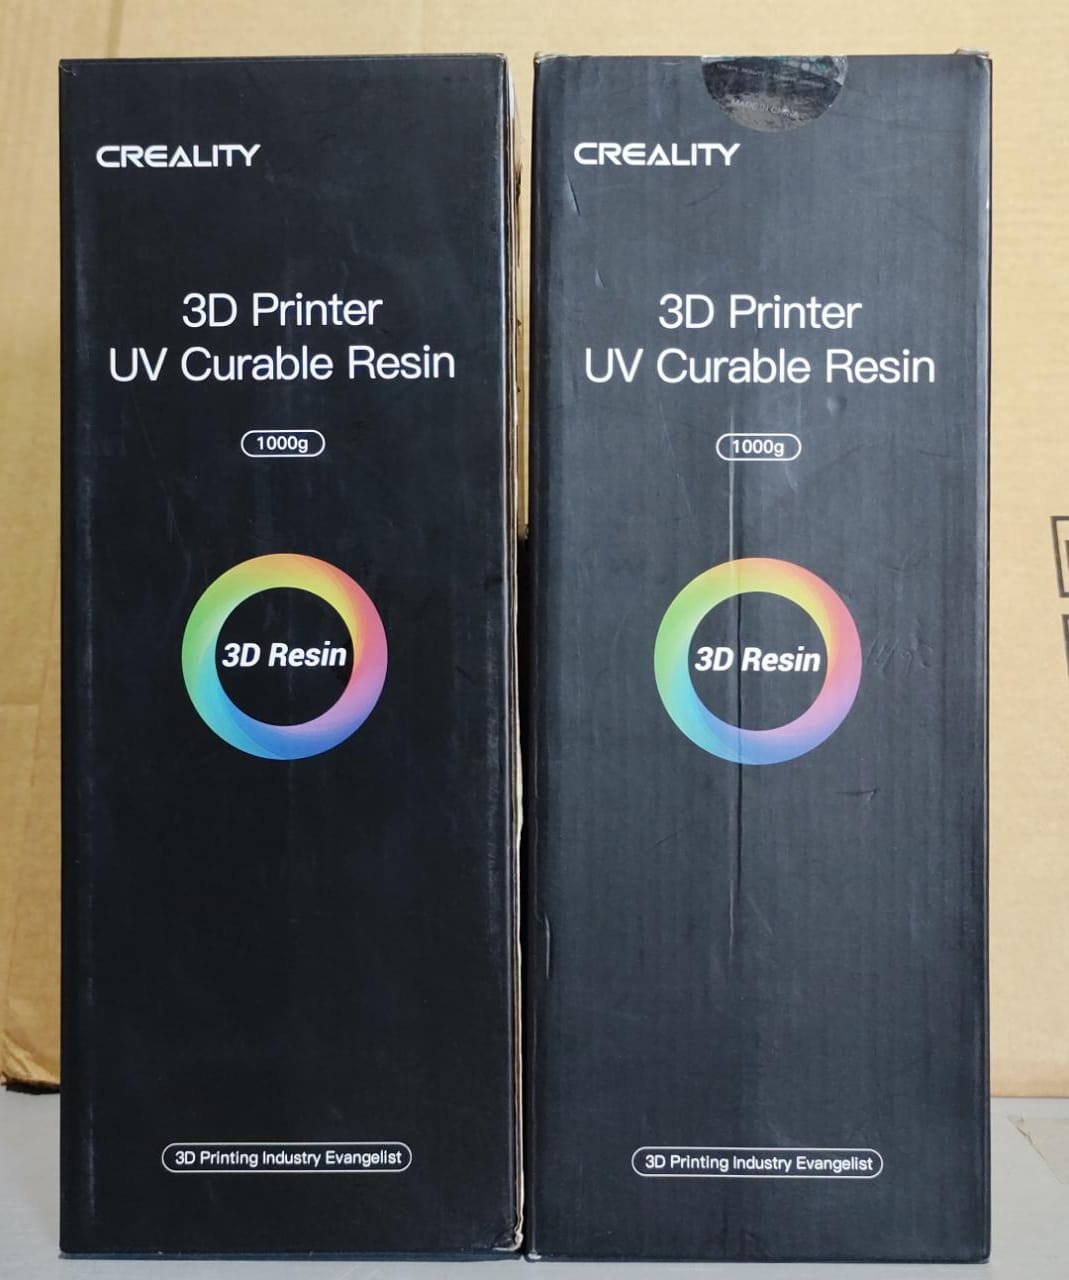 Pack de tinta para impresoras 3d creality printer uv curable resina blanco 1000g [Openbox]